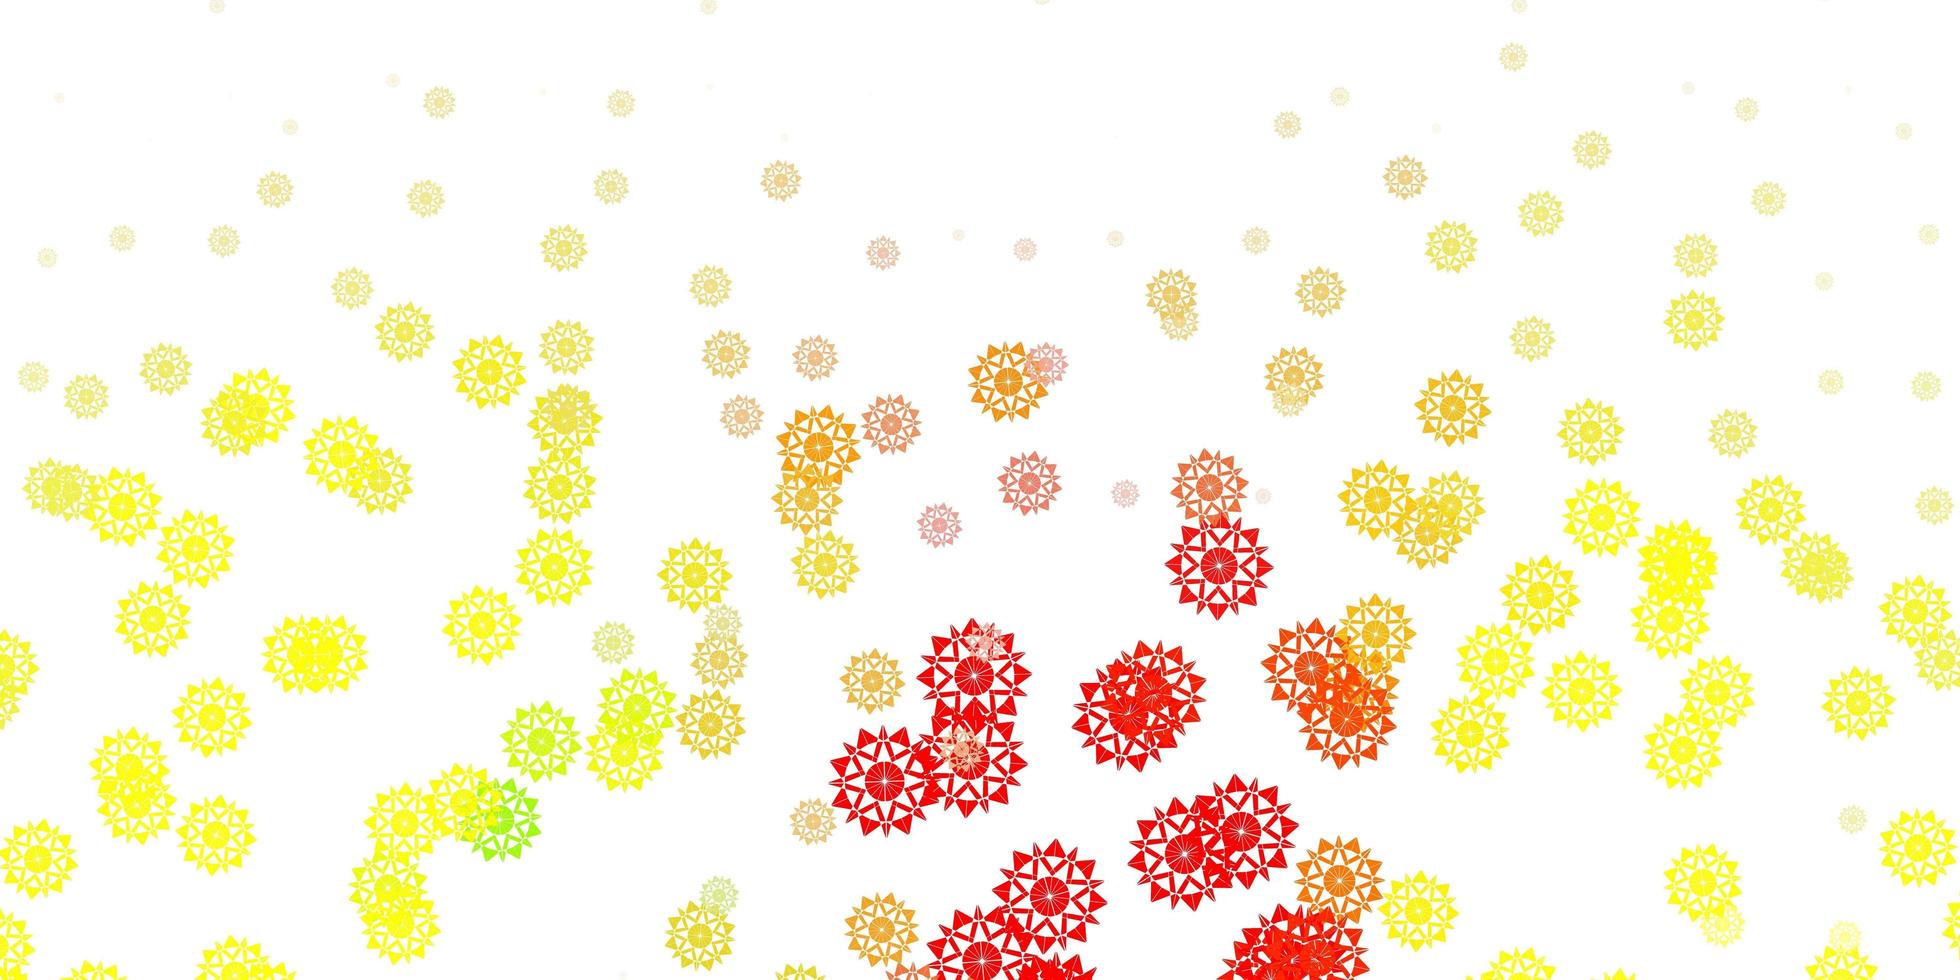 textura de vector rojo, amarillo claro con copos de nieve brillantes.